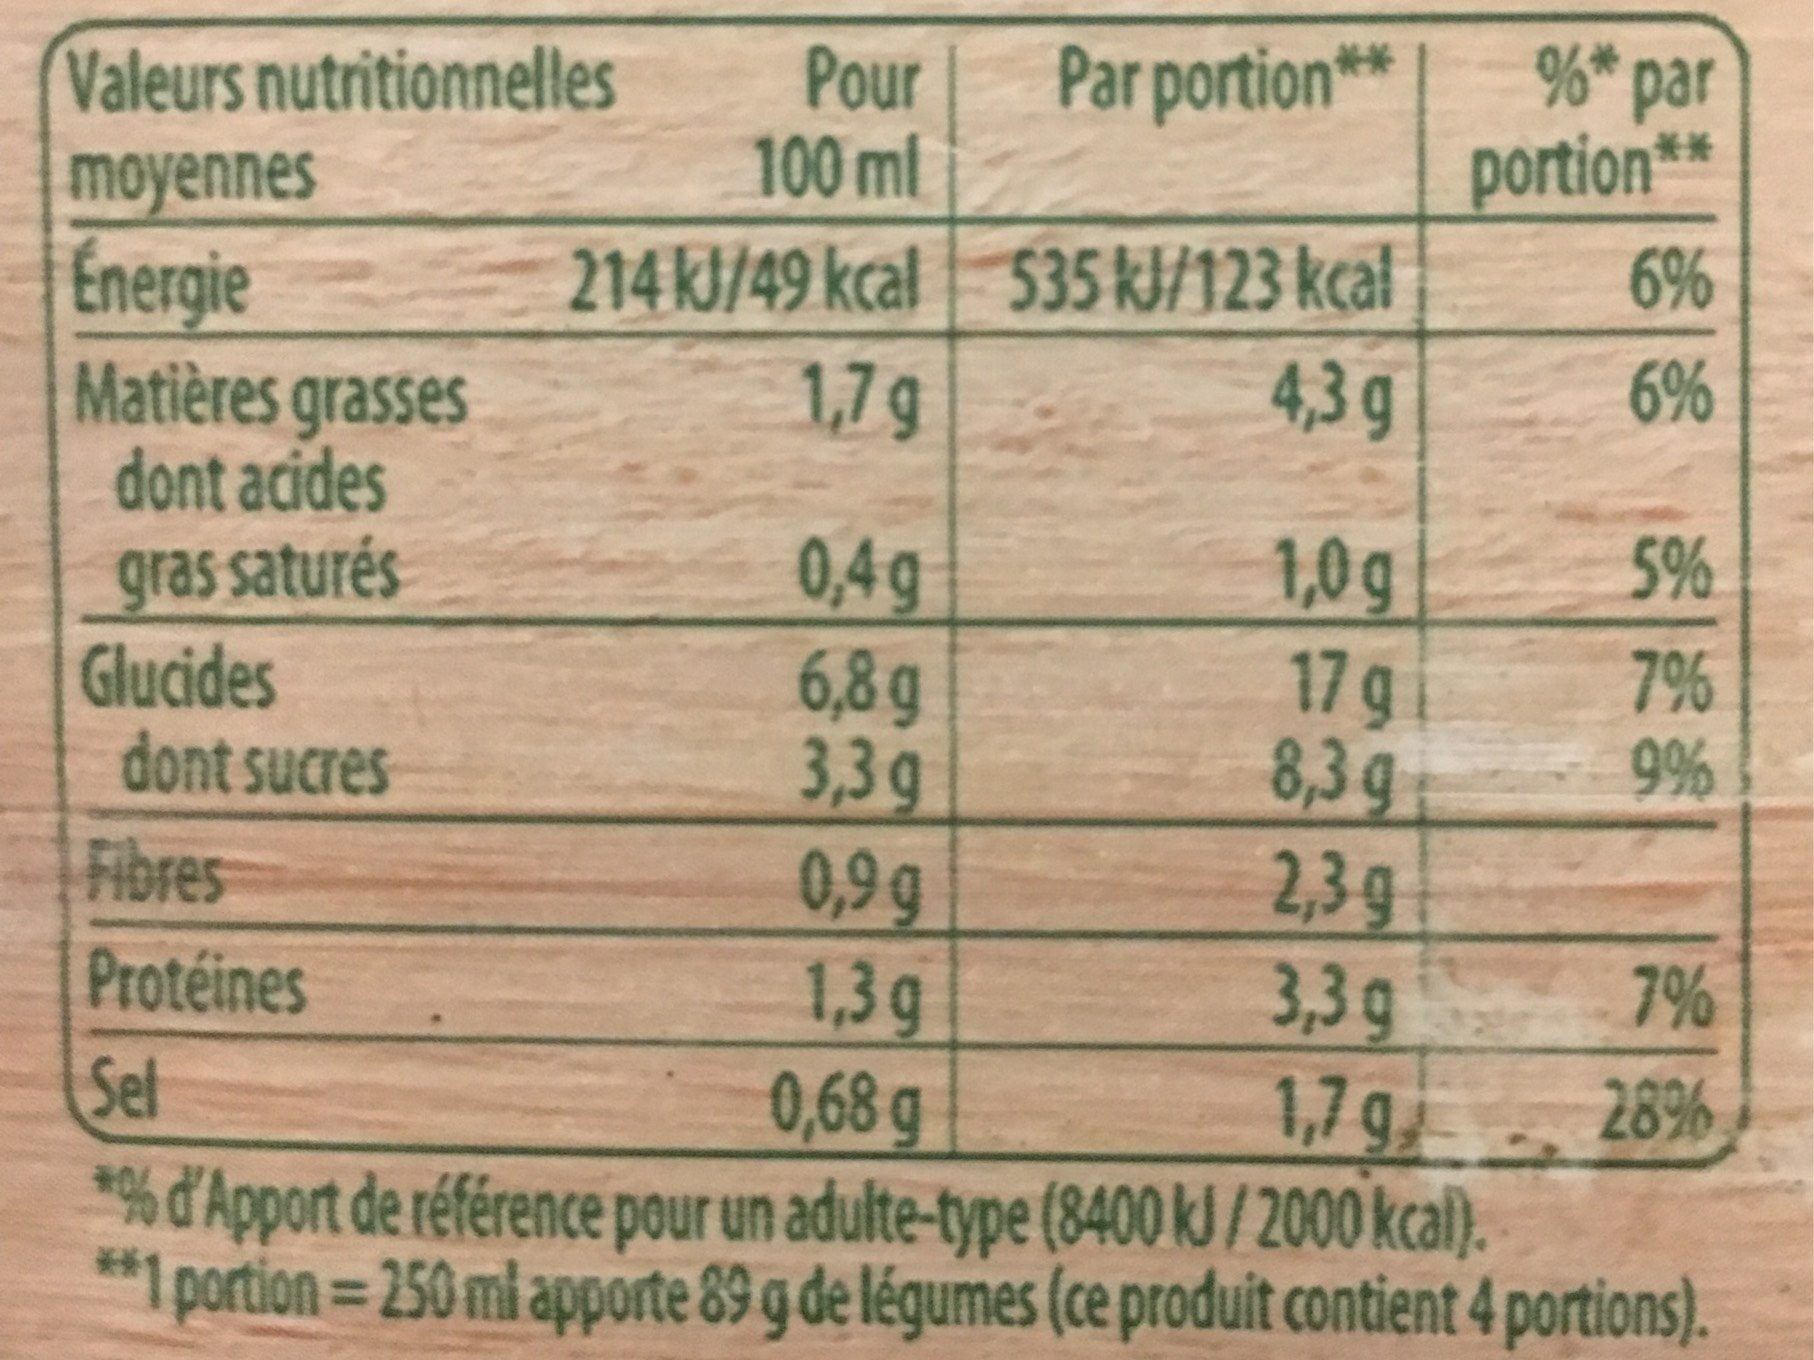 Knr 12leg from frais 2x1l - Tableau nutritionnel